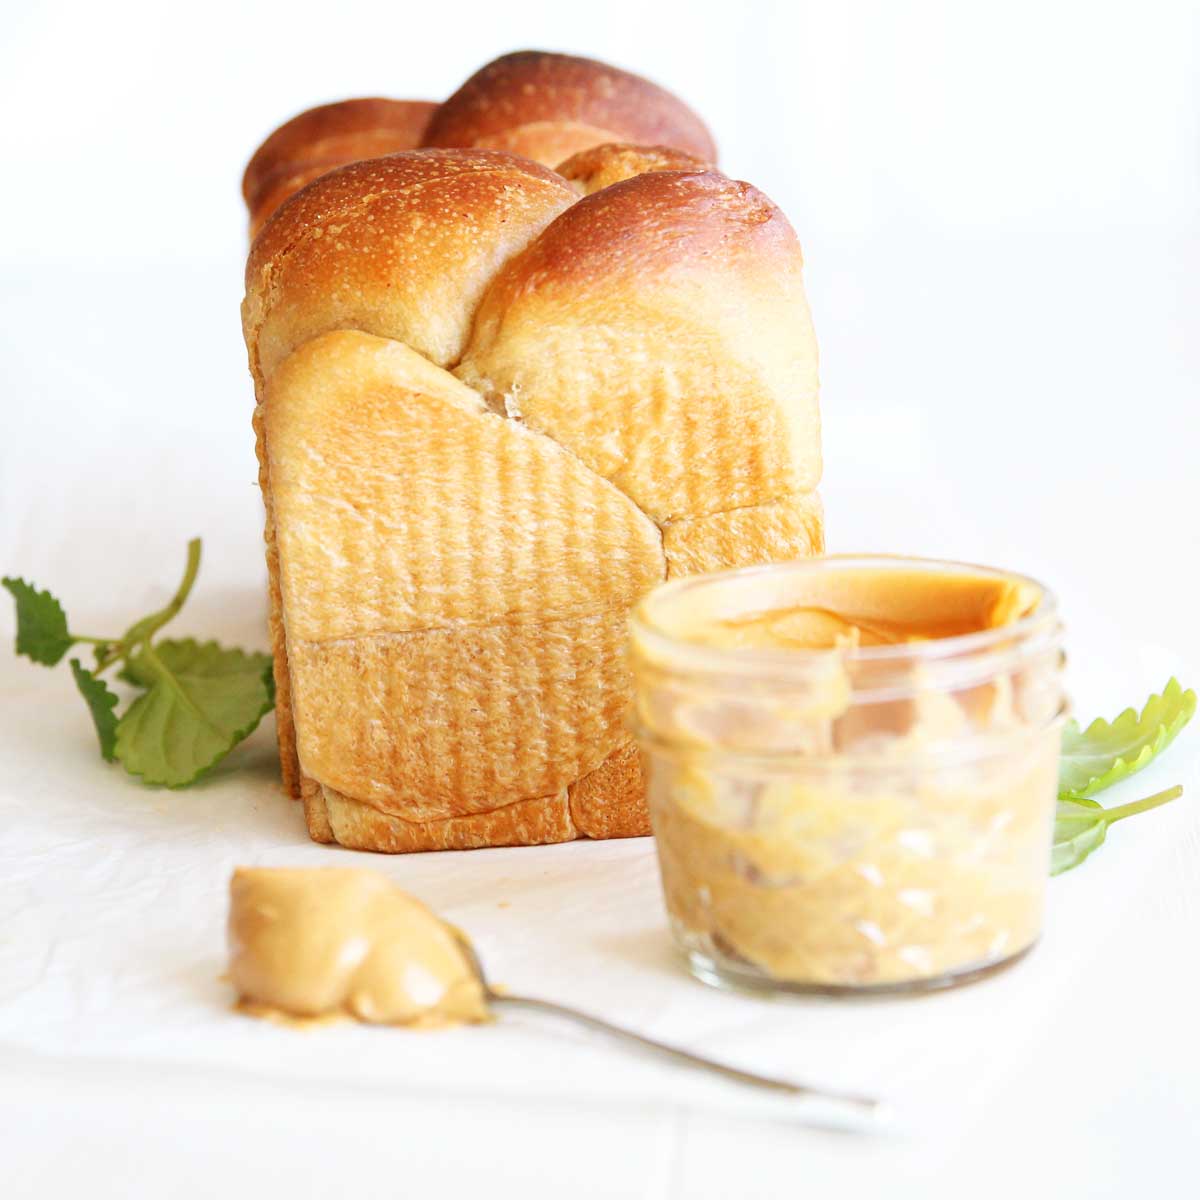 Peanut Butter Yeast Bread (A Healthier Vegan "Brioche" Recipe) - Sweet Potato Swiss Roll Cake